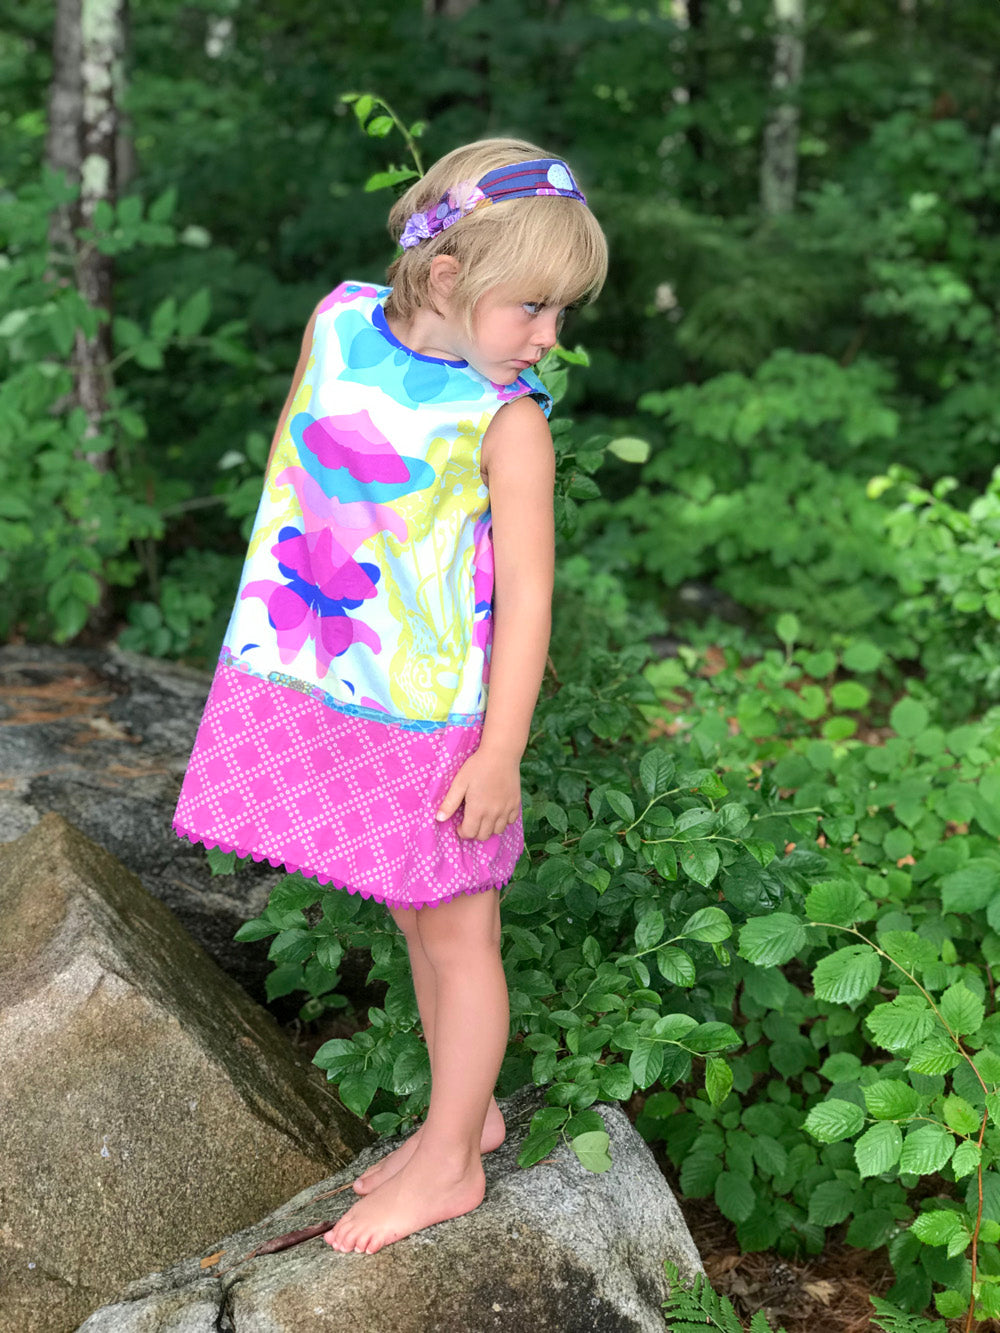 reversible pattern block dress in aqua ghost nouveau - little girl Pearl